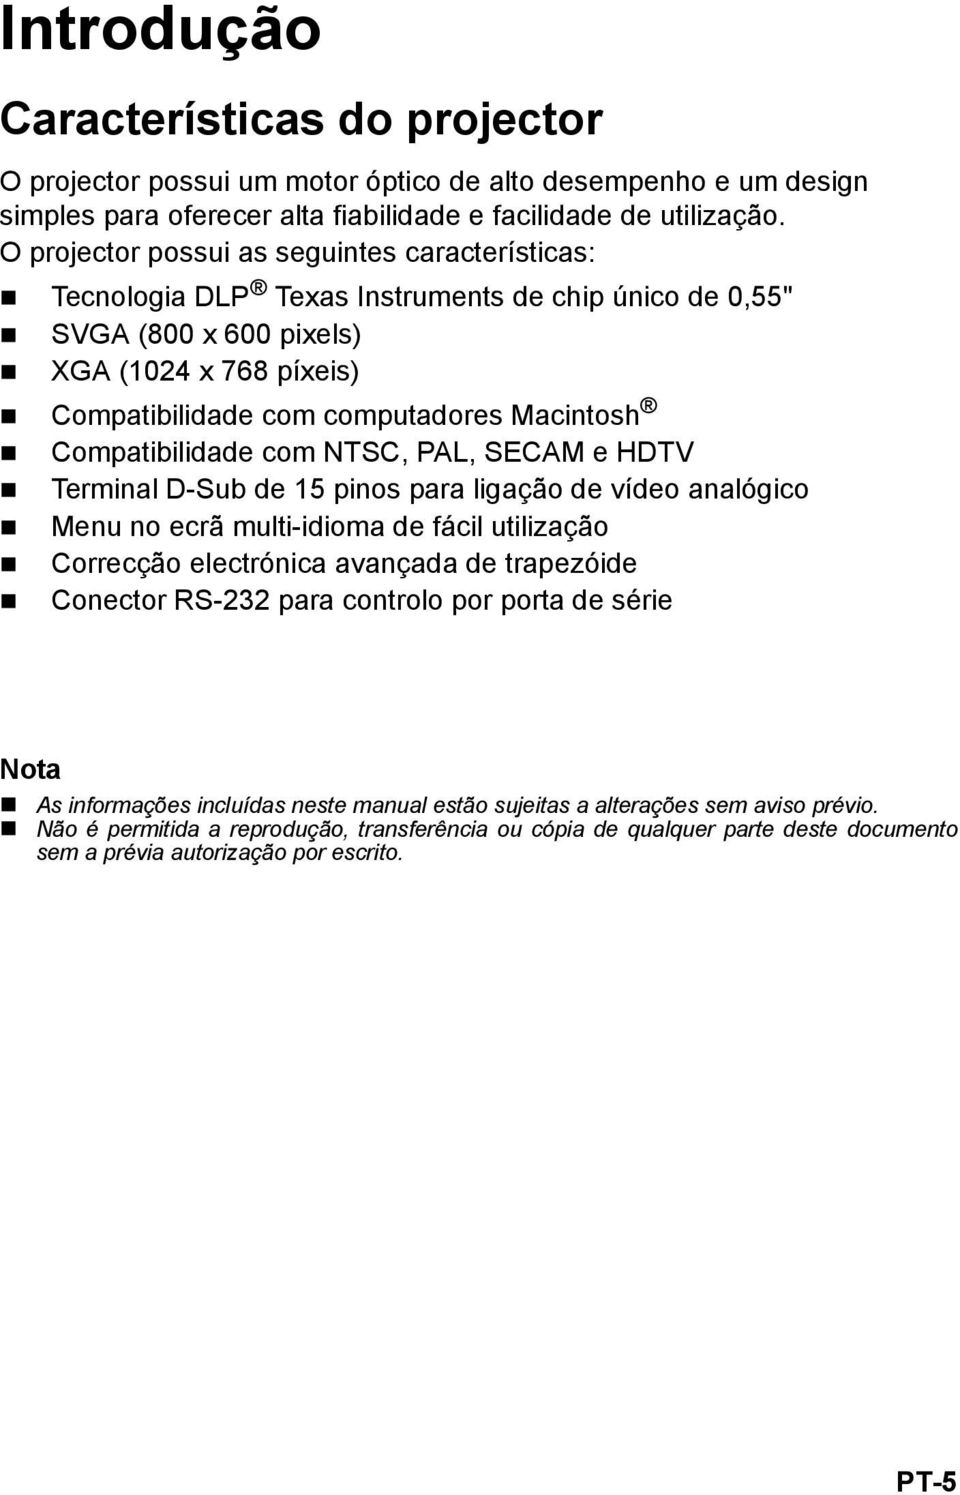 Compatibilidade com NTSC, PAL, SECAM e HDTV Terminal D-Sub de 15 pinos para ligação de vídeo analógico Menu no ecrã multi-idioma de fácil utilização Correcção electrónica avançada de trapezóide